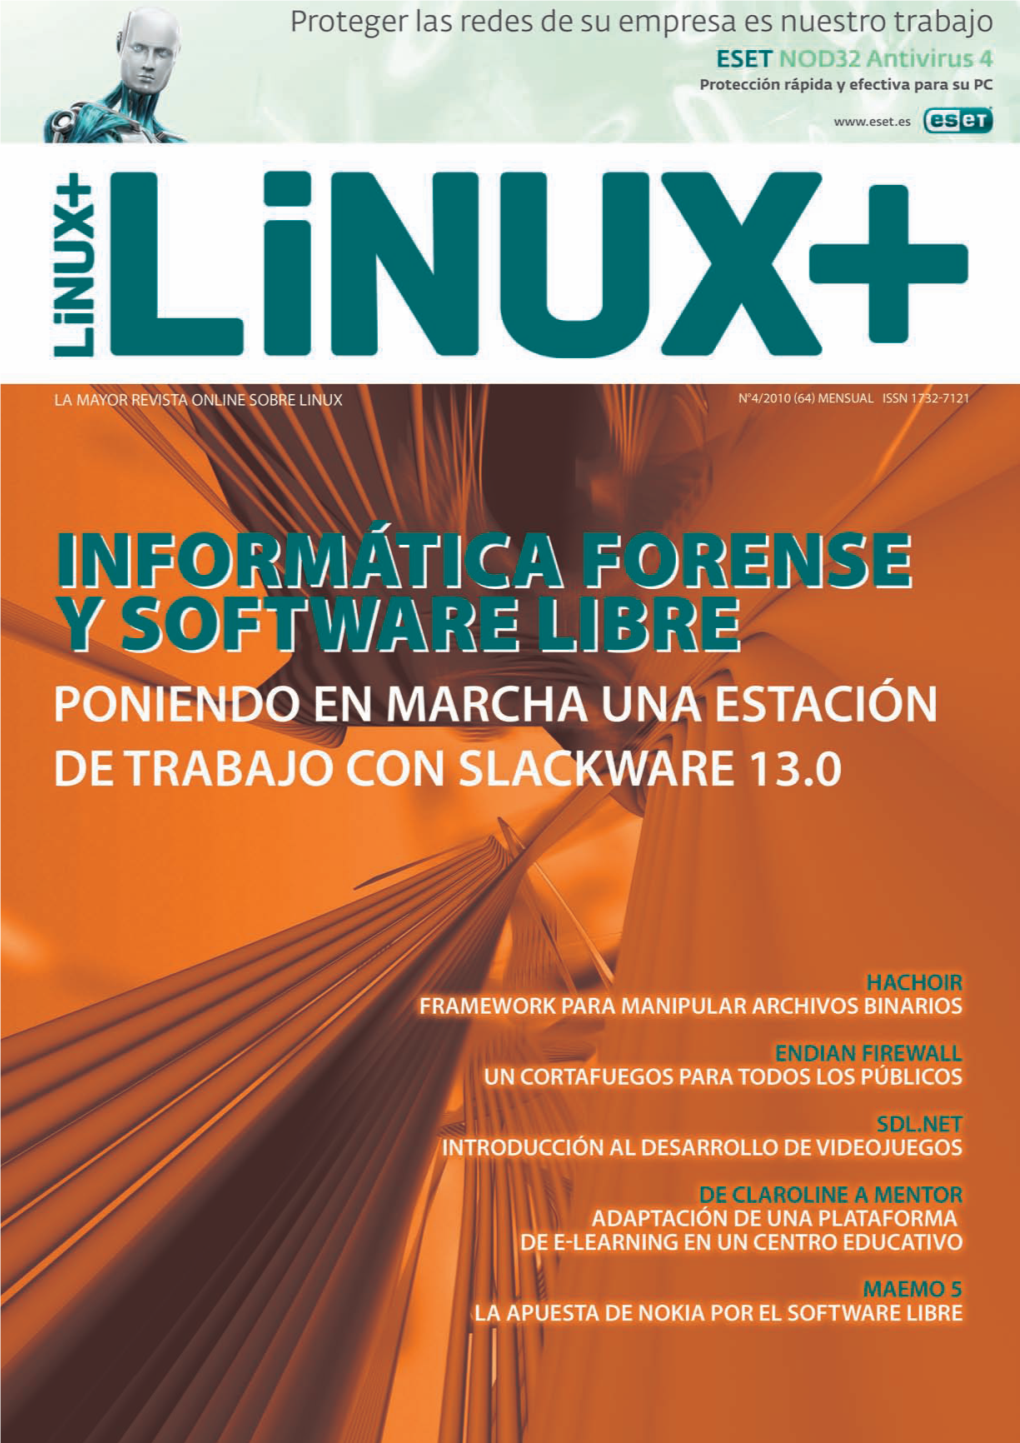 Linux+ 04 2010 ES Online Ebook